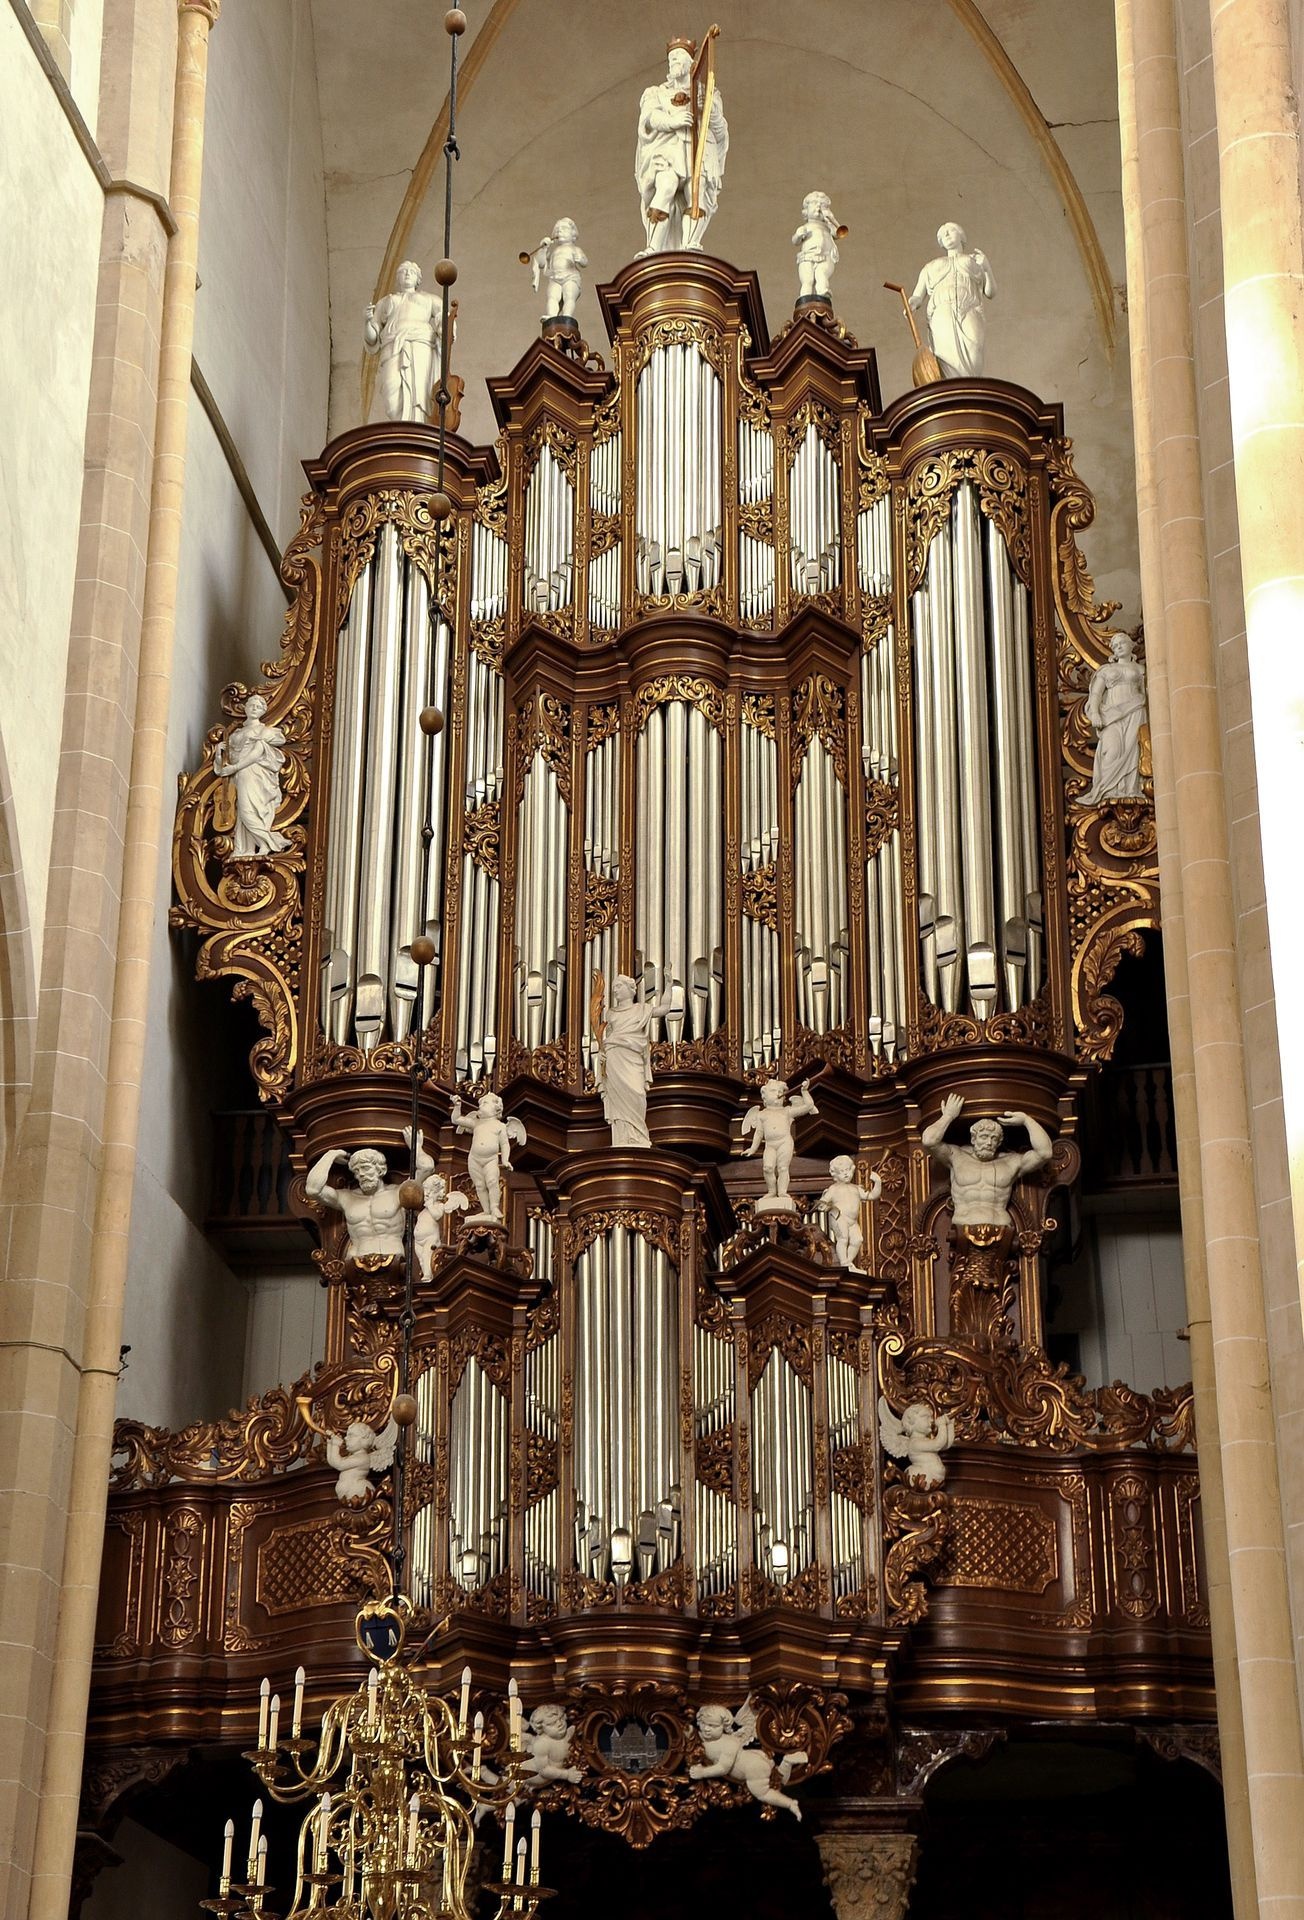 Pipe organs, Organ music, Pipe organ performances, Classical sound, 1310x1920 HD Phone